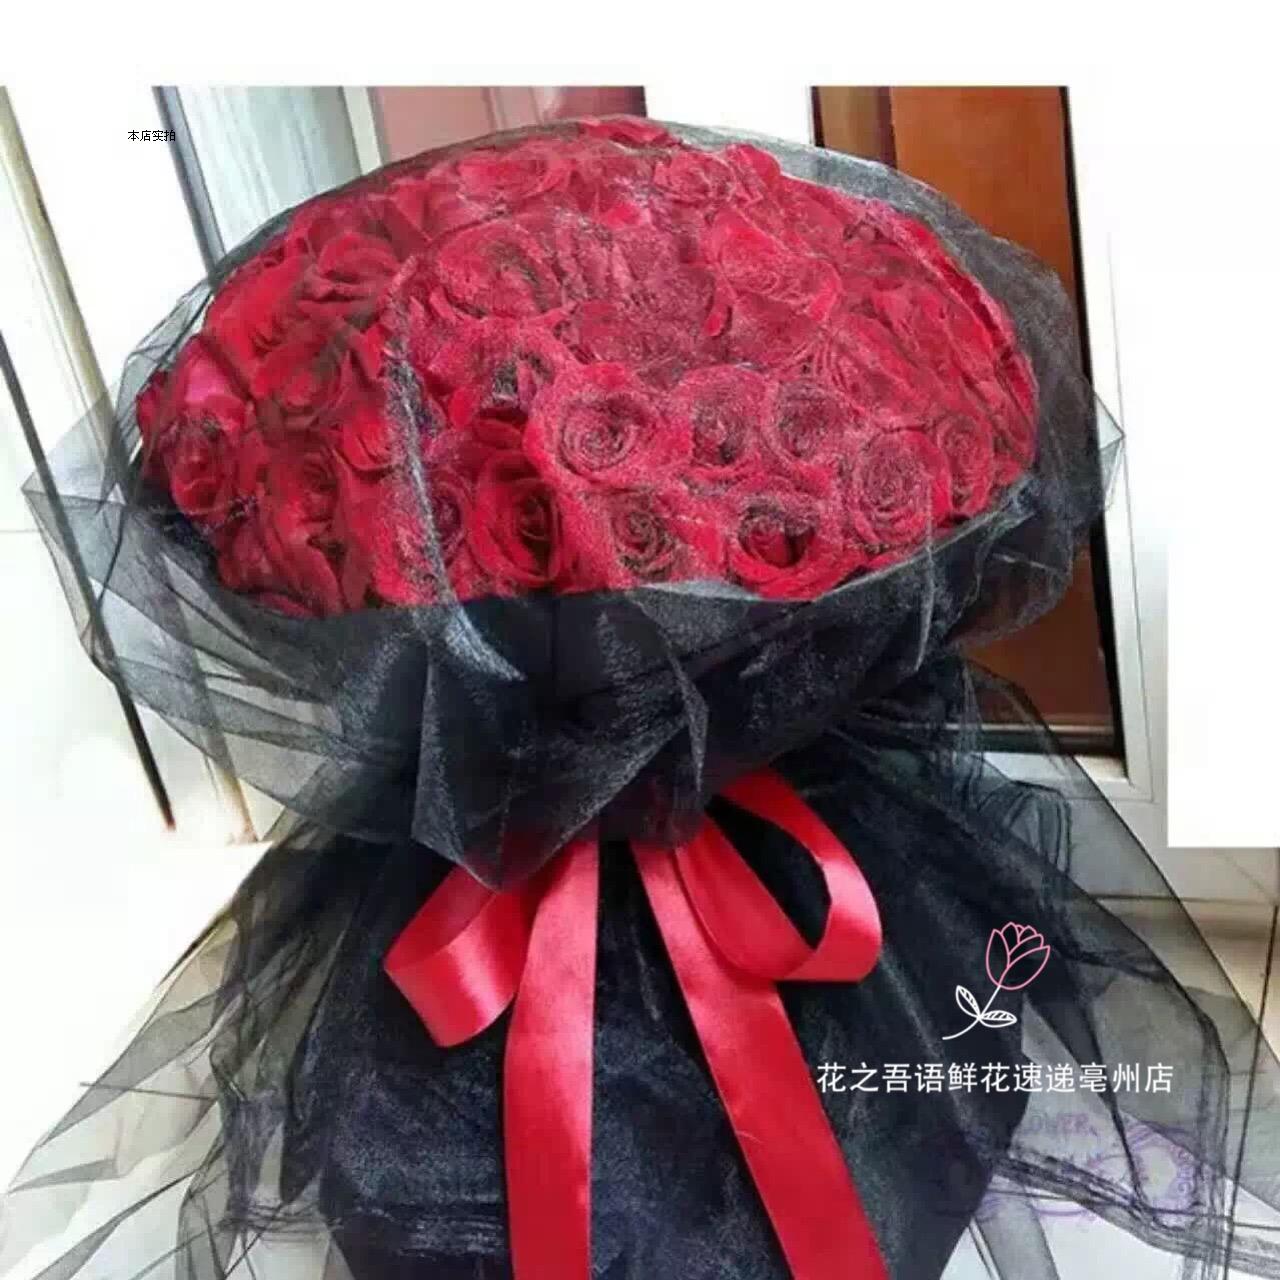 99朵欧式红玫瑰黑纱花束亳州市区七夕情人节同城鲜花店速递热销中